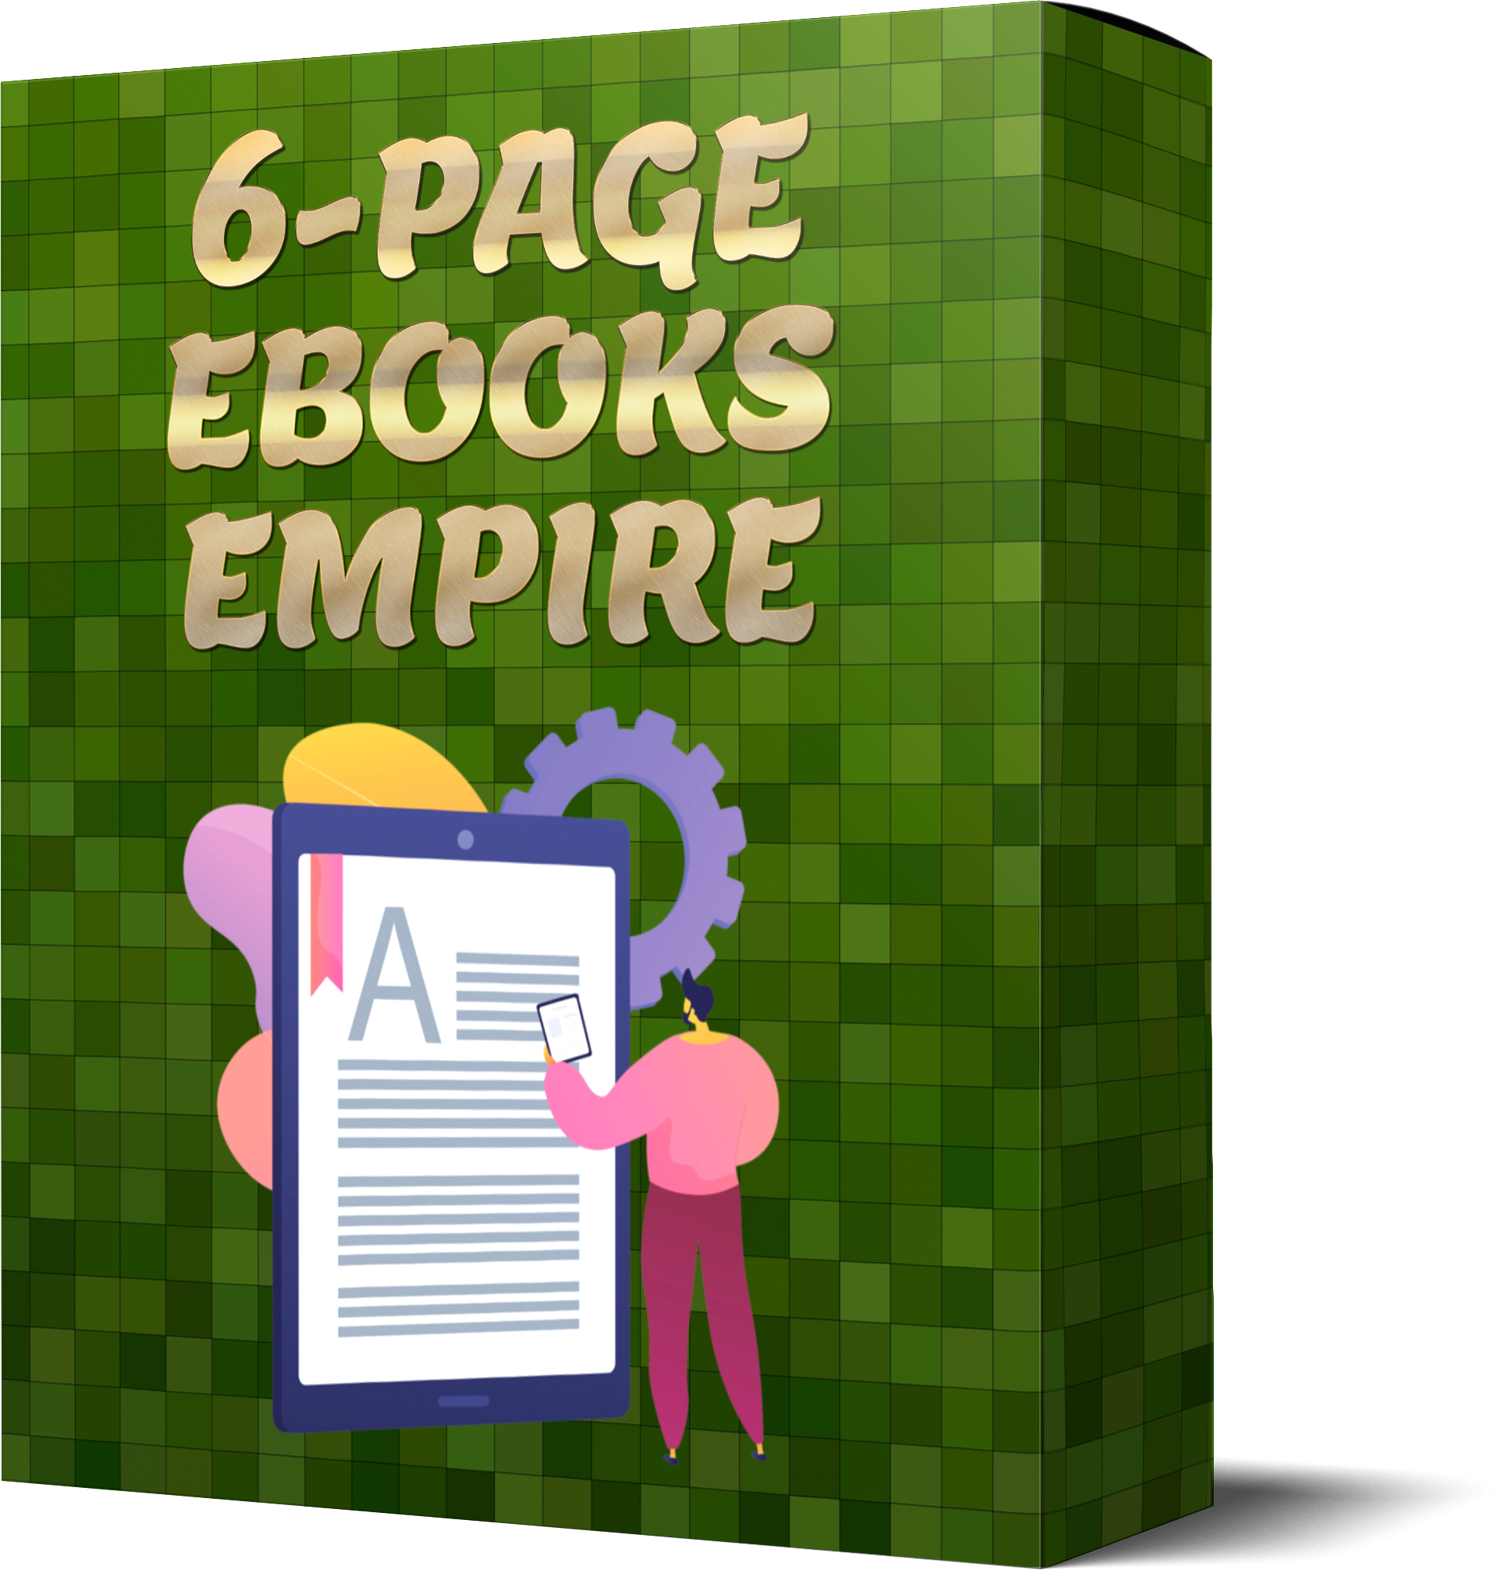 6 Page Ebooks Empire